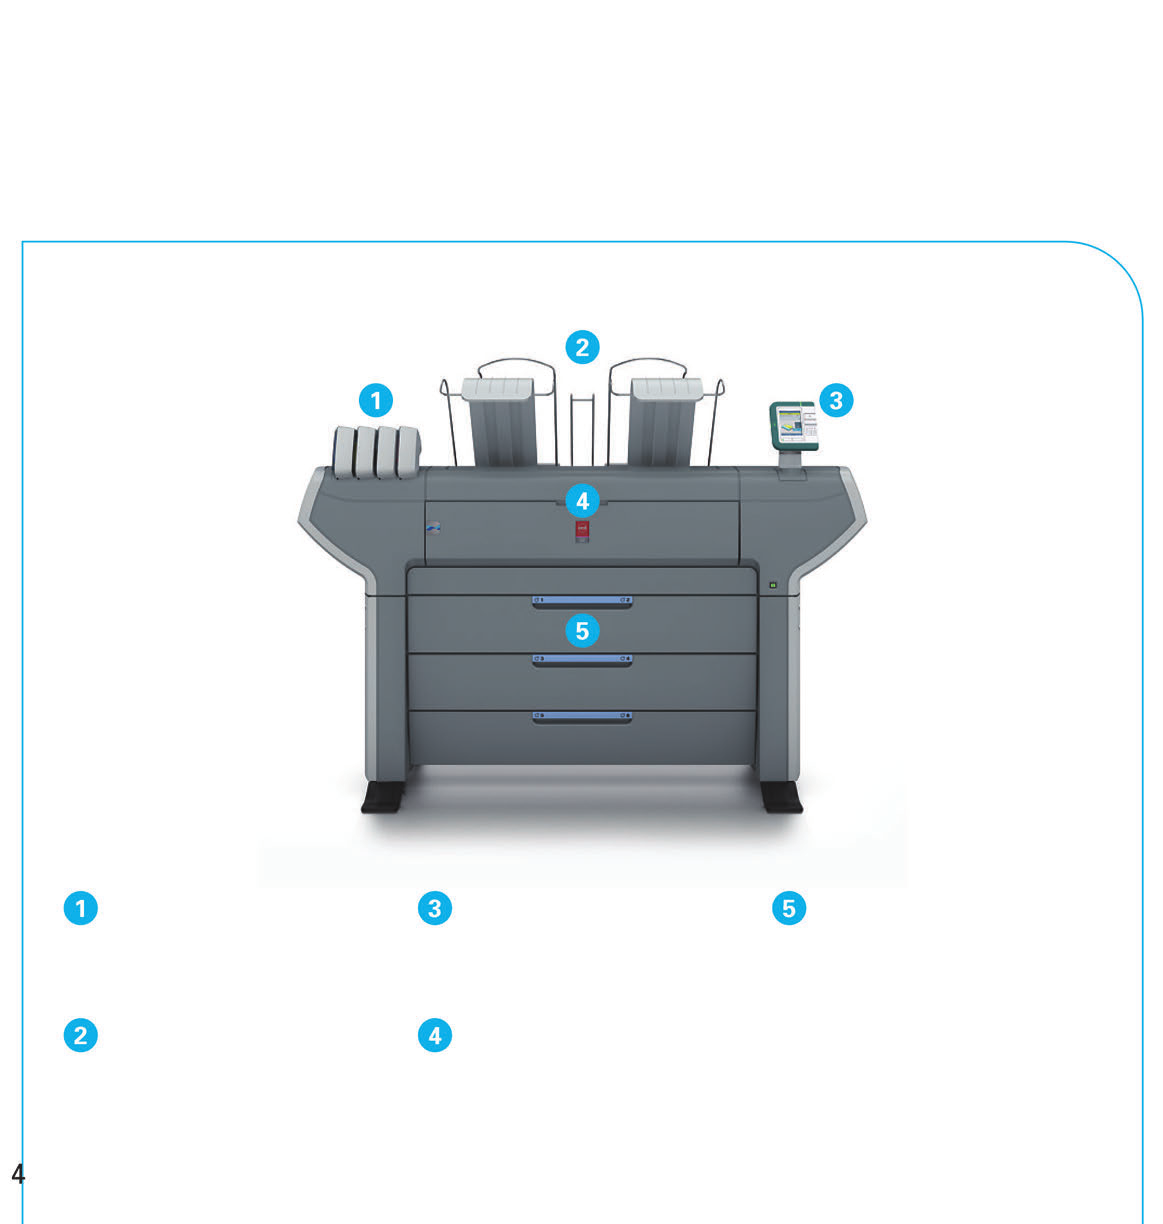 Σύστημα εκτύπωσης Océ ColorWave 650 Παραγωγικότητα που καλύπτει κάθε ανάγκη Ο Océ ColorWave 650 έχει δυνατότητα ασπρόμαυρης και έγχρωμης εκτύπωσης με ρυθμό έως 225 έγγραφα μεγέθους A1 ανά ώρα,